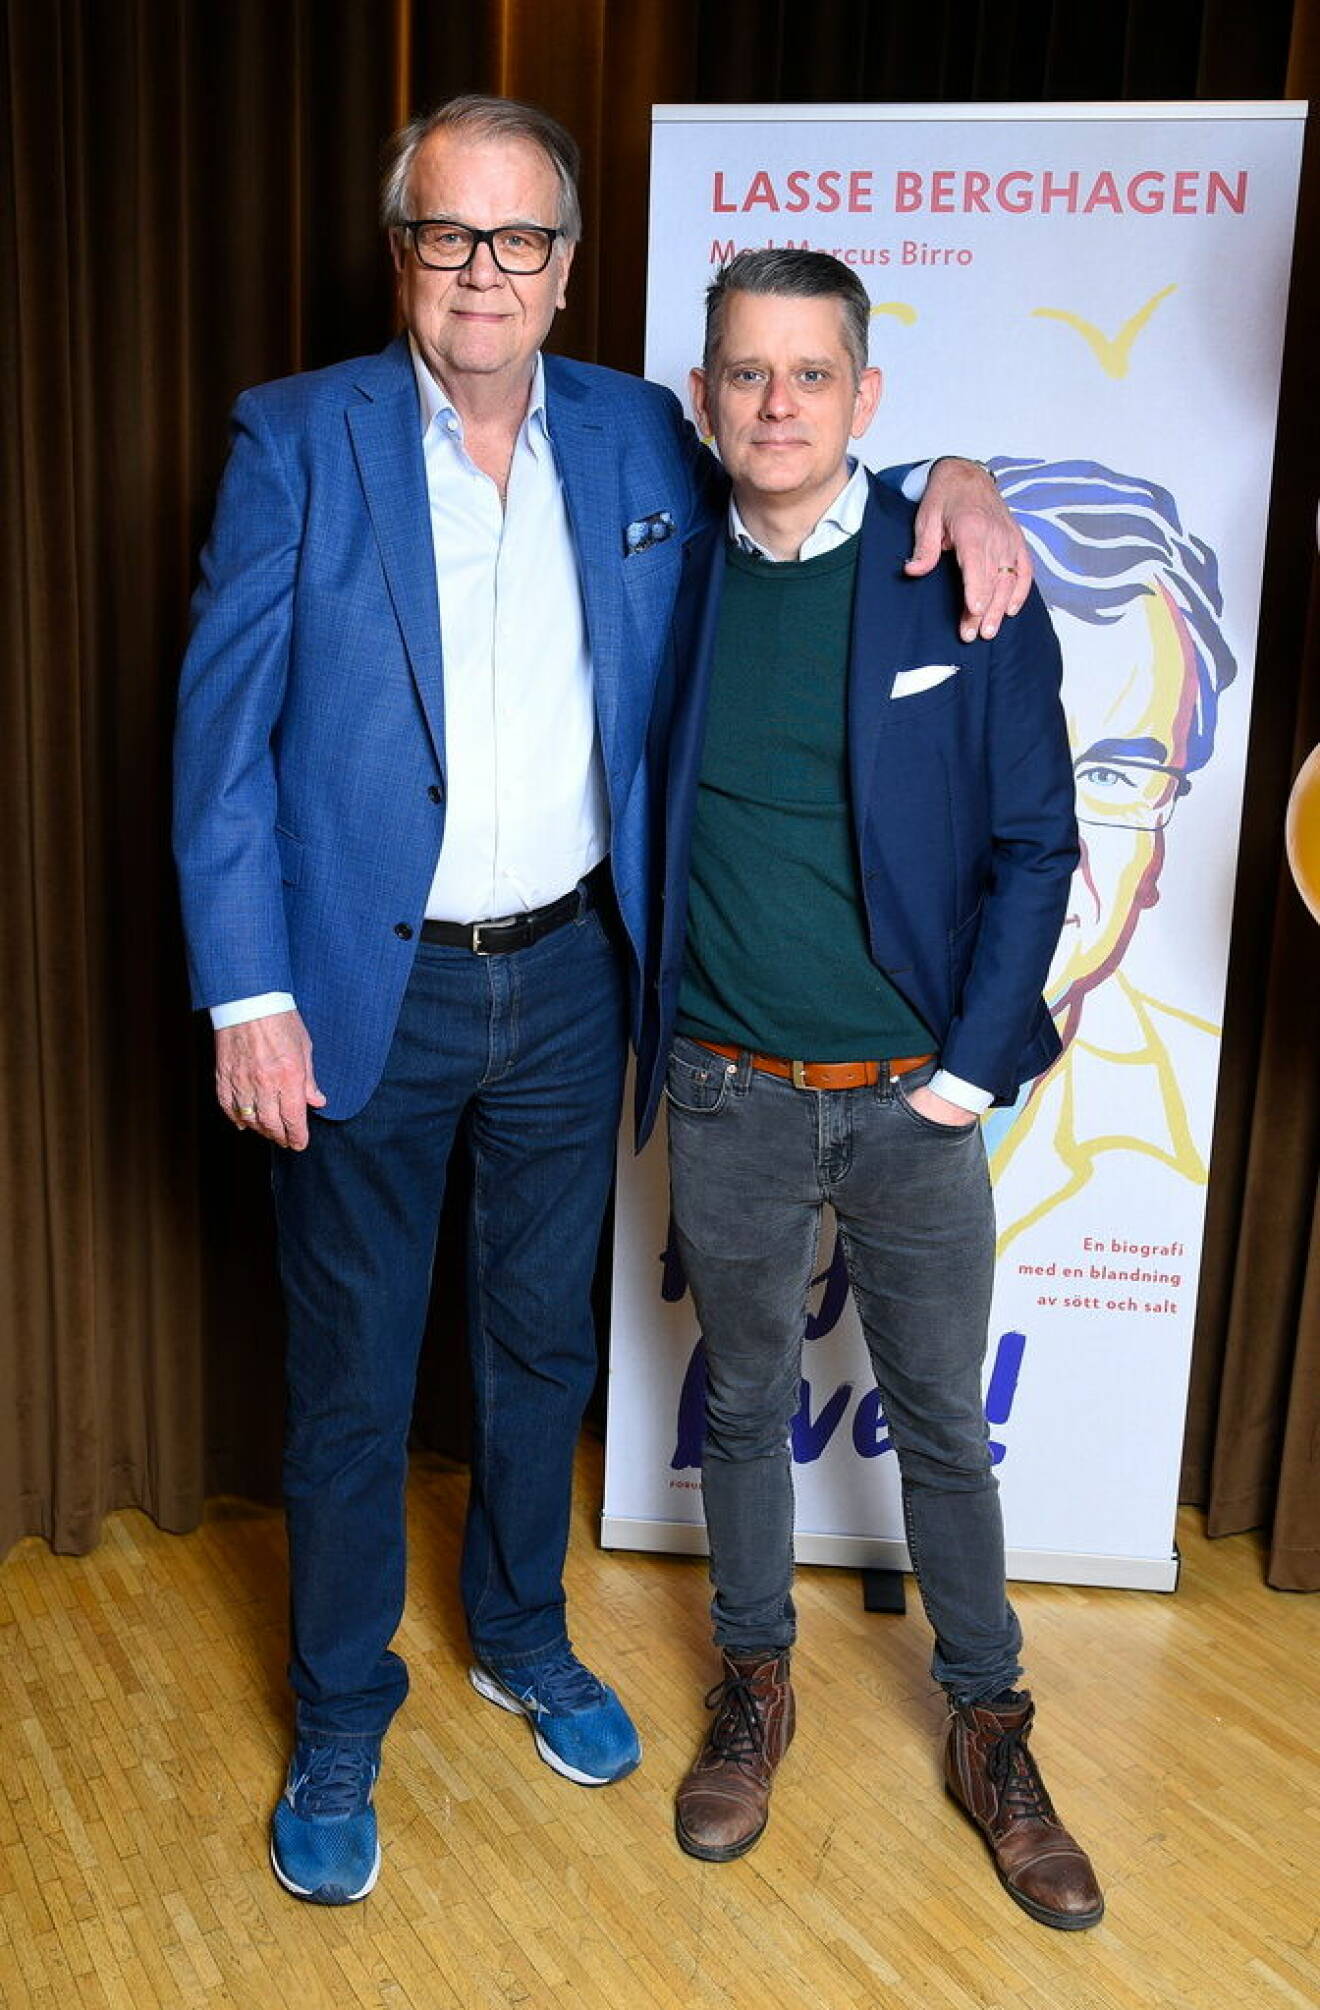 Lasse Berghagen och Marcus Birro